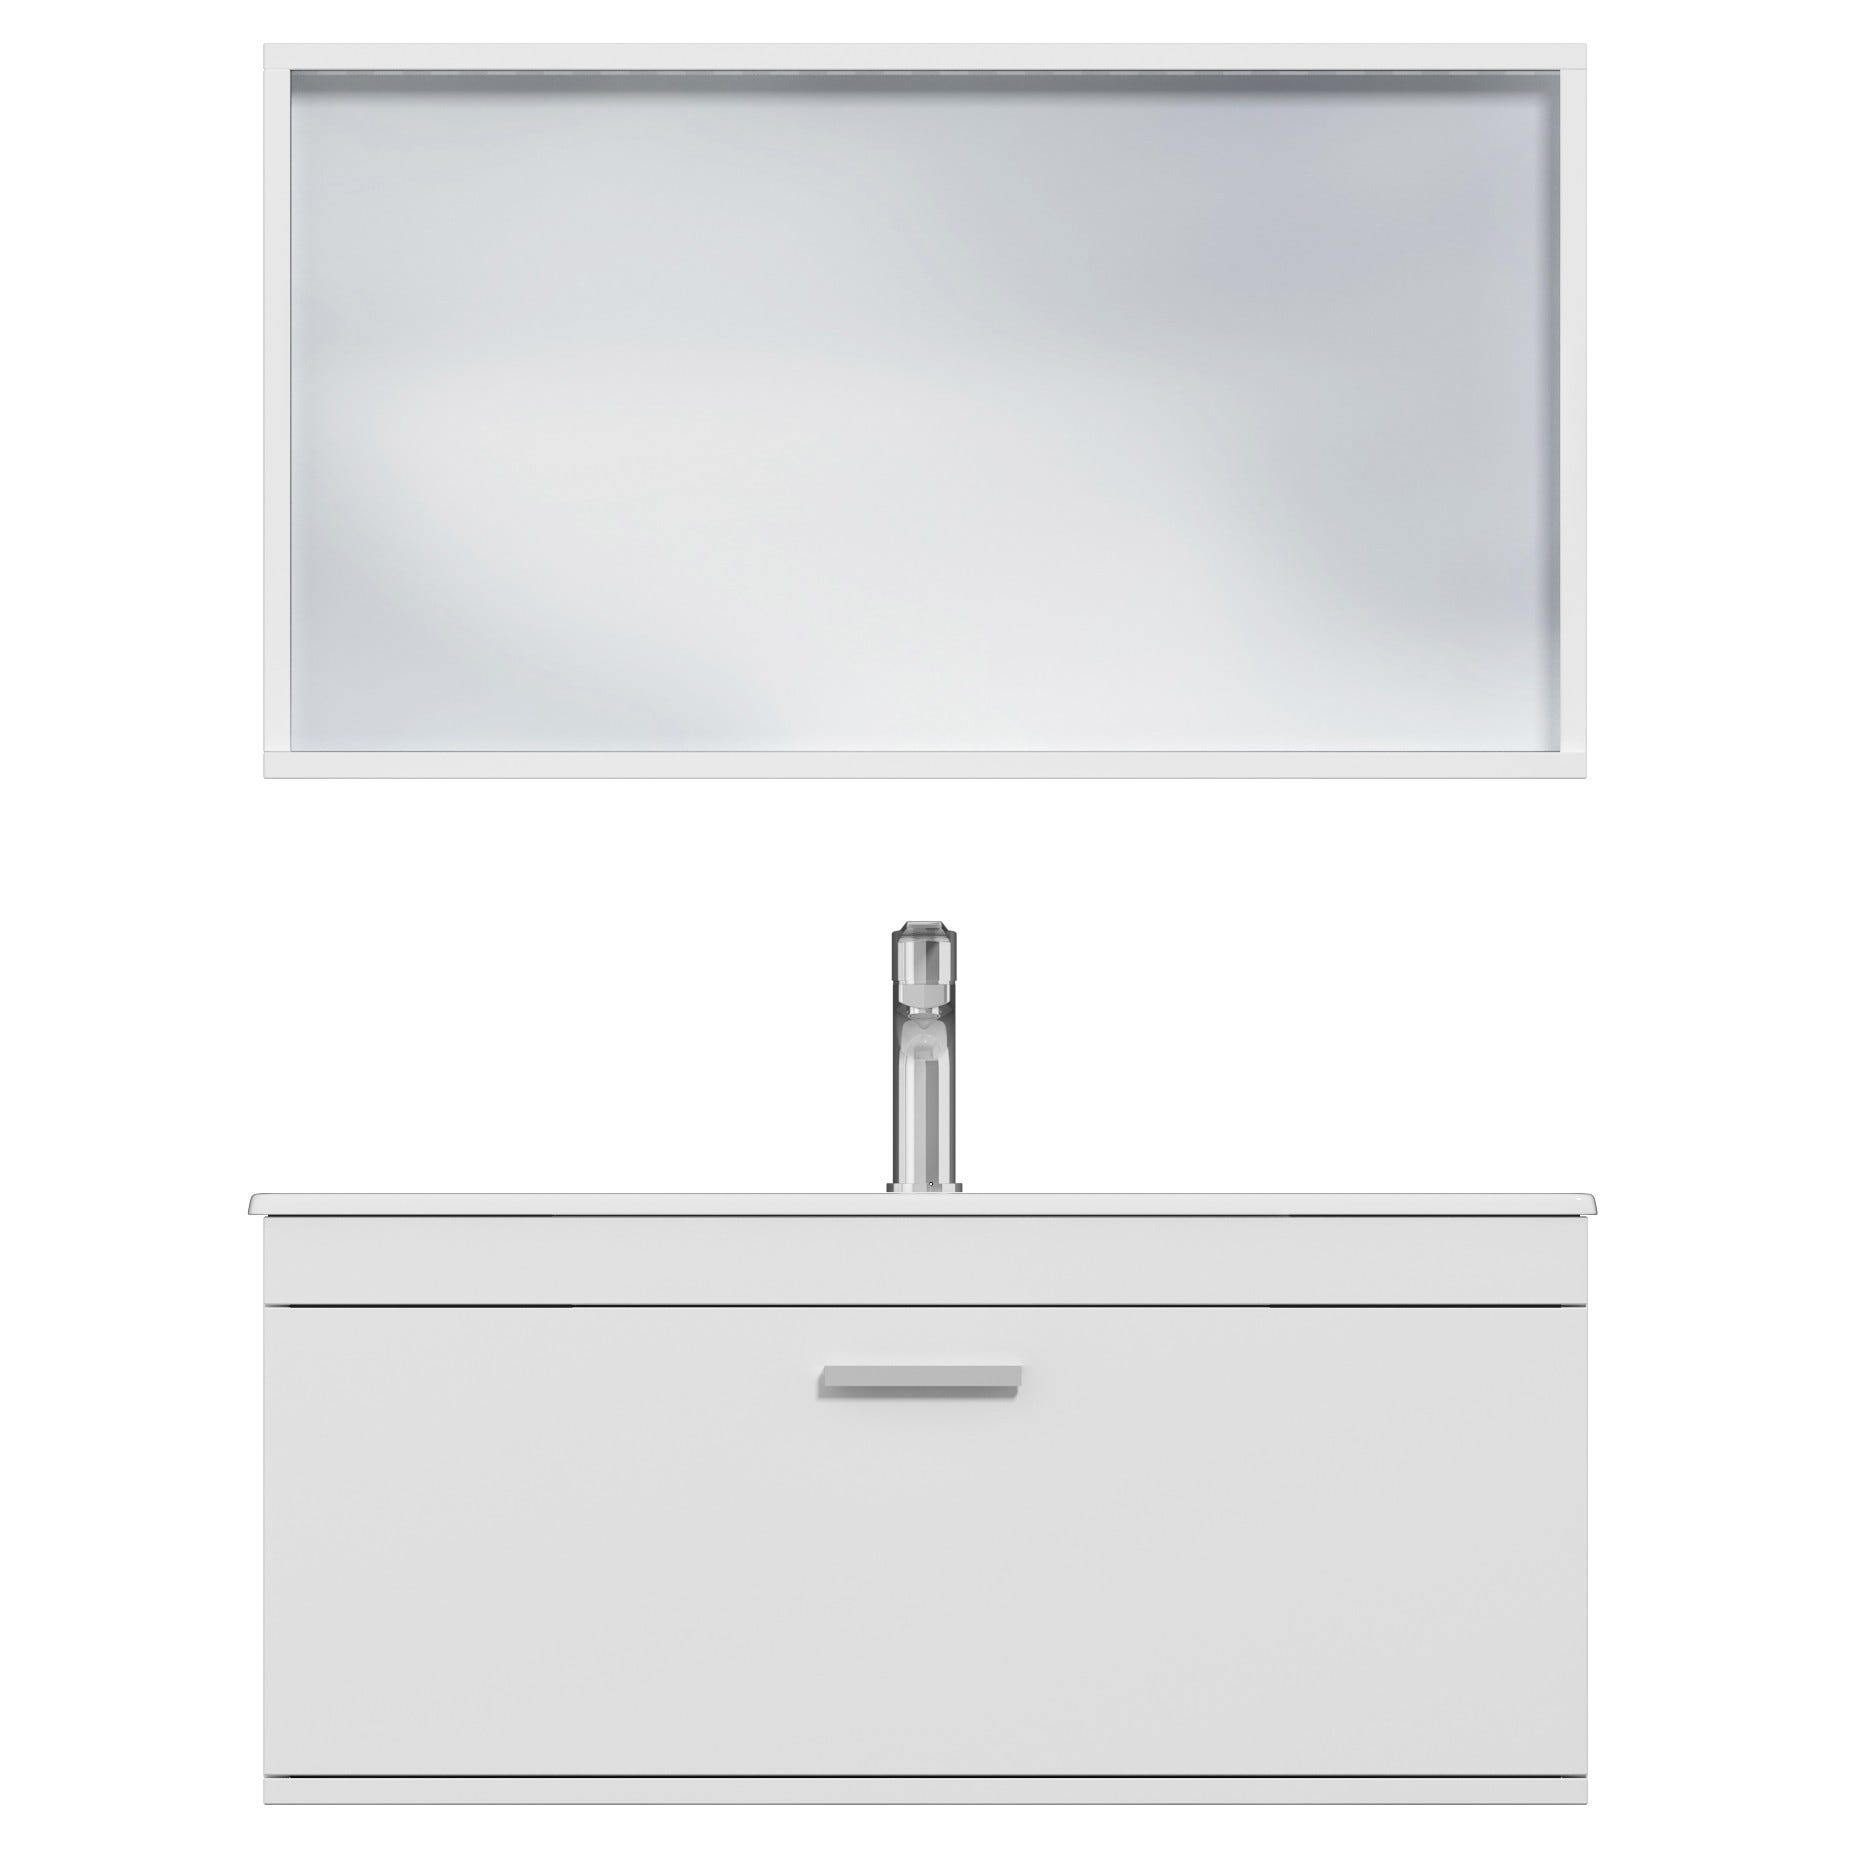 RUBITE Meuble salle de bain simple vasque 1 tiroir blanc largeur 90 cm + miroir cadre 4